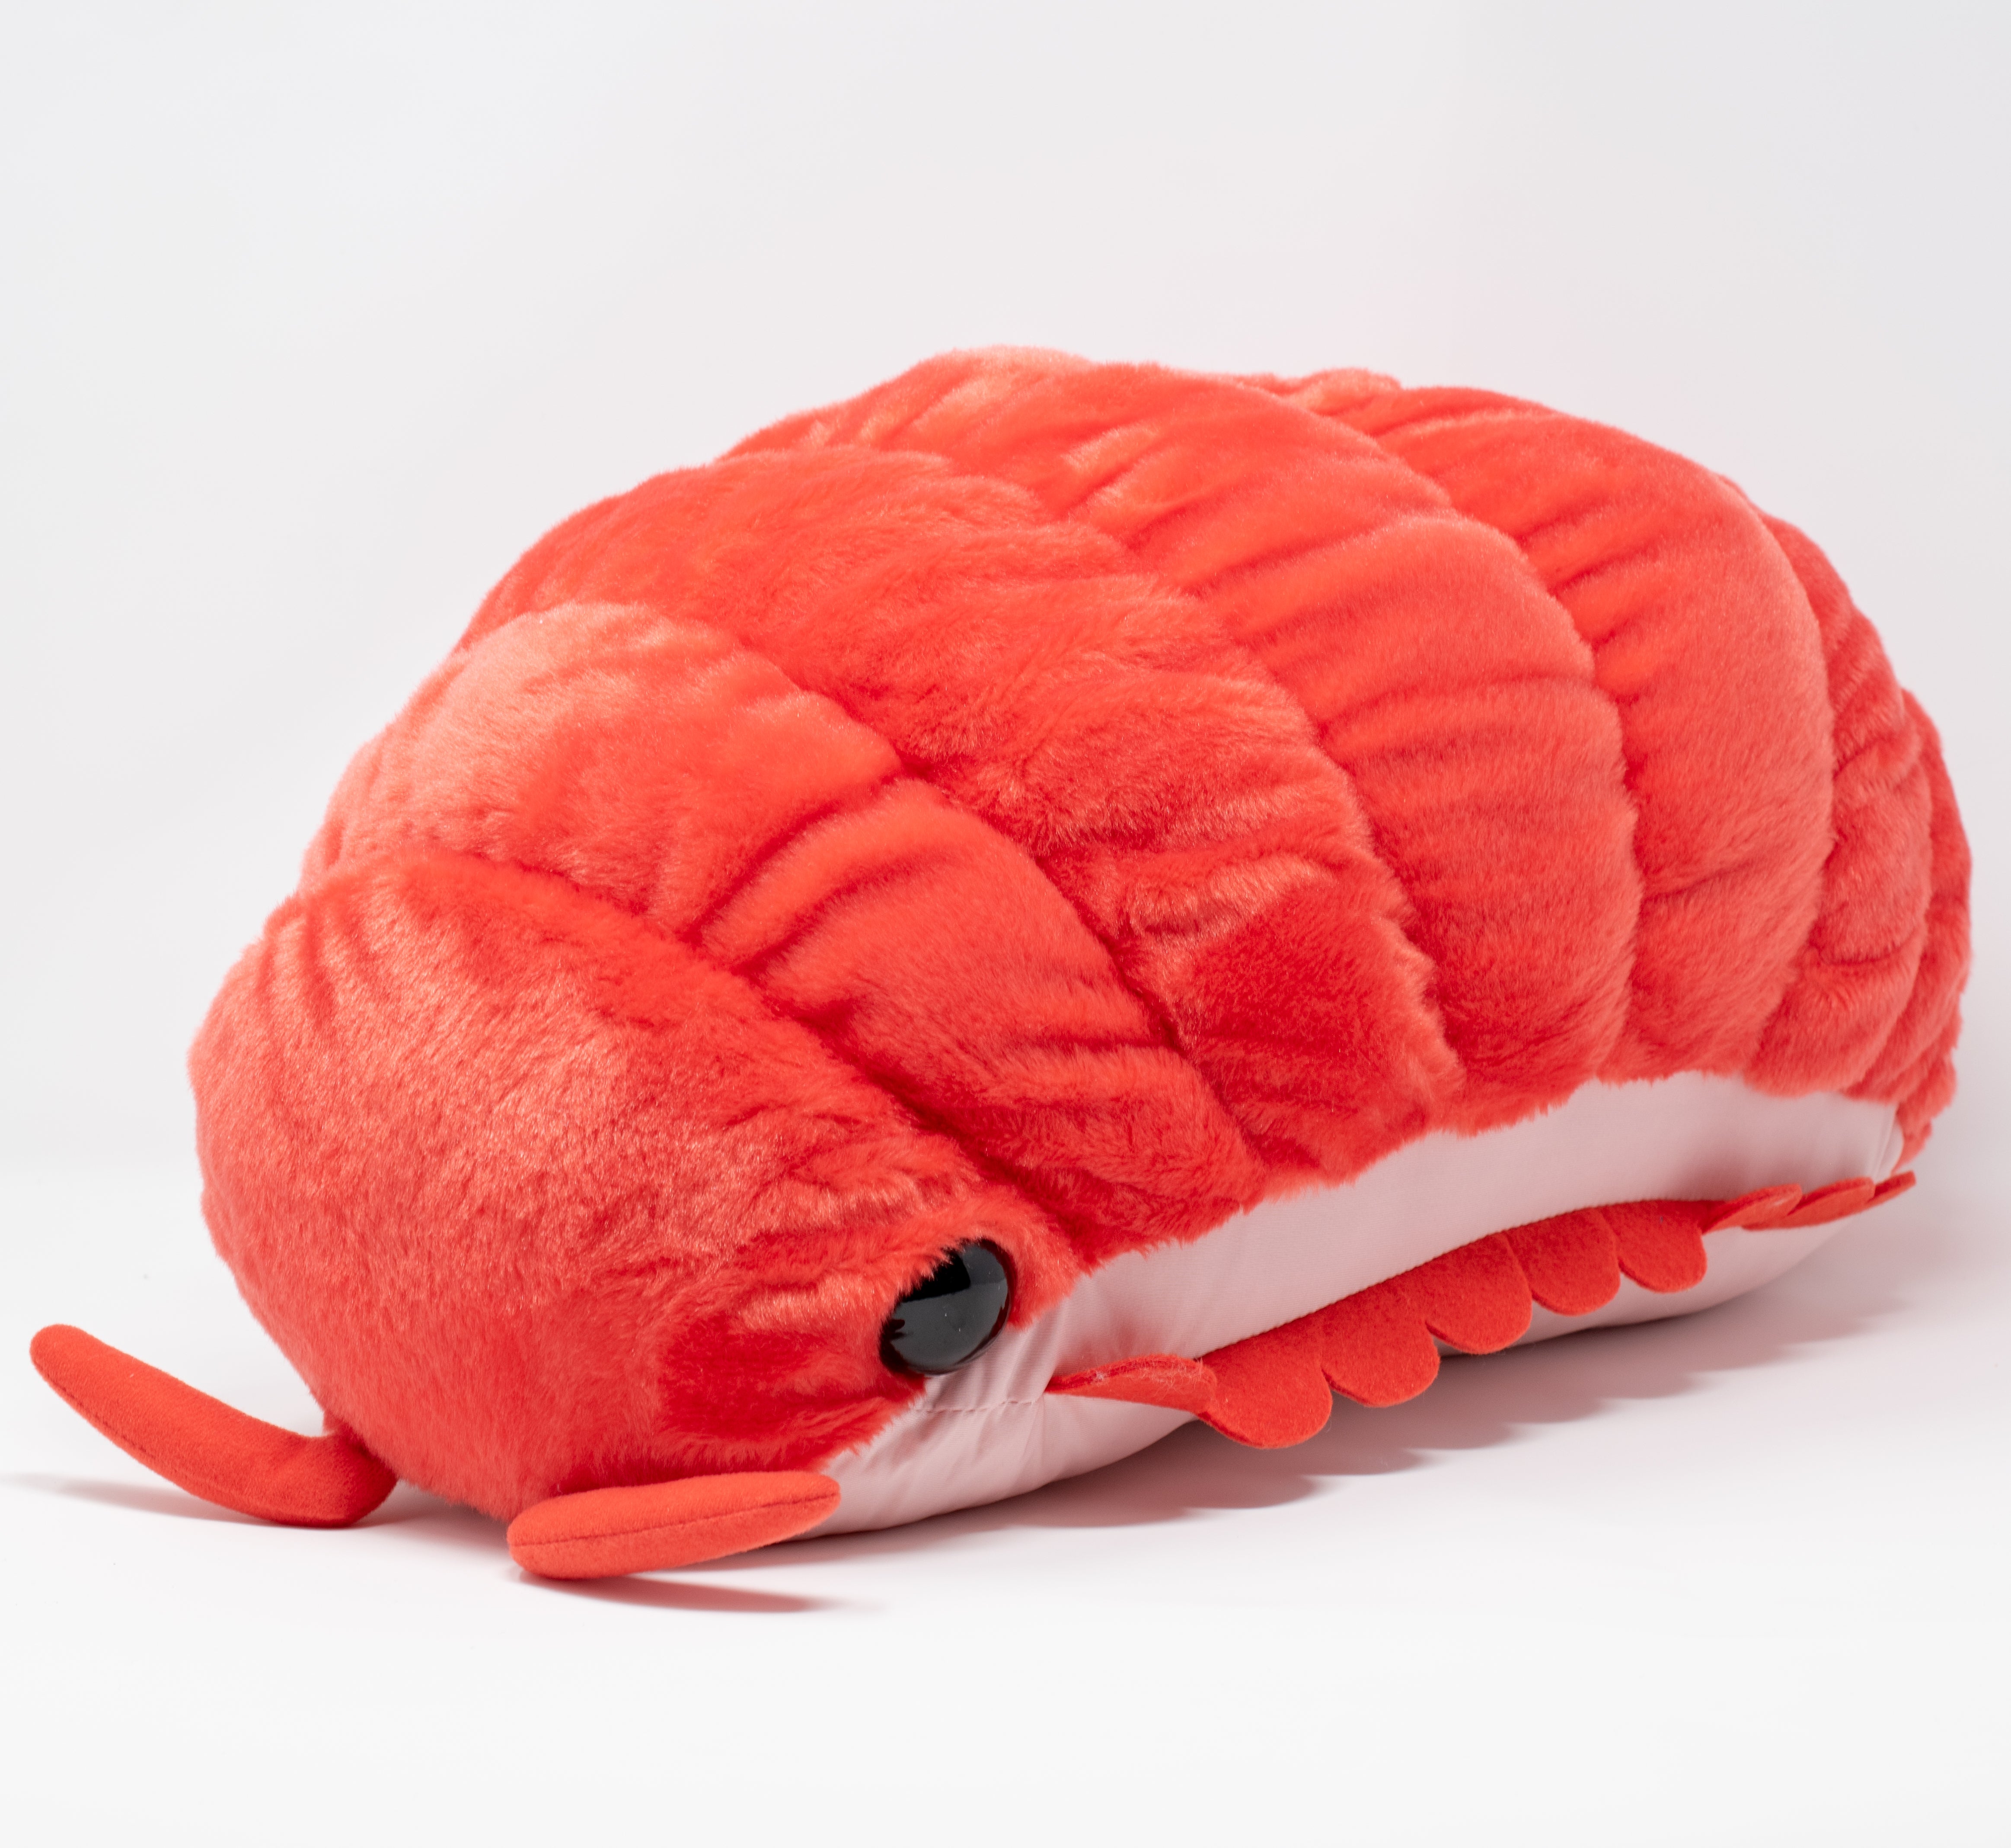 Pillbug/Isopod - Watermelon (Large)